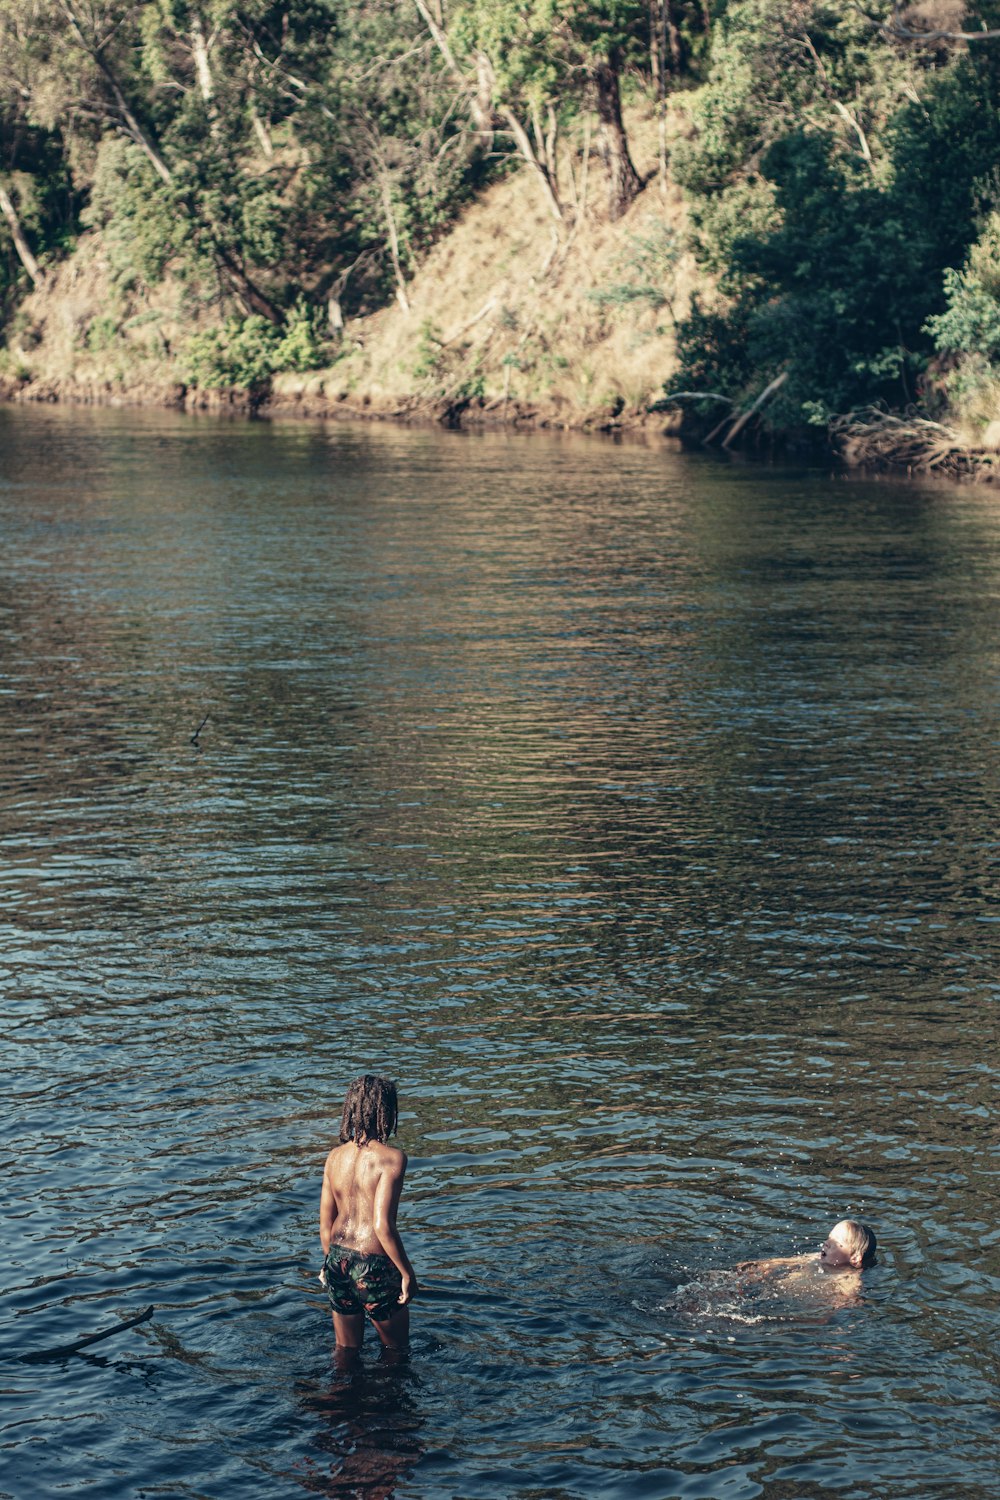 Una persona parada en un cuerpo de agua con un frisbee